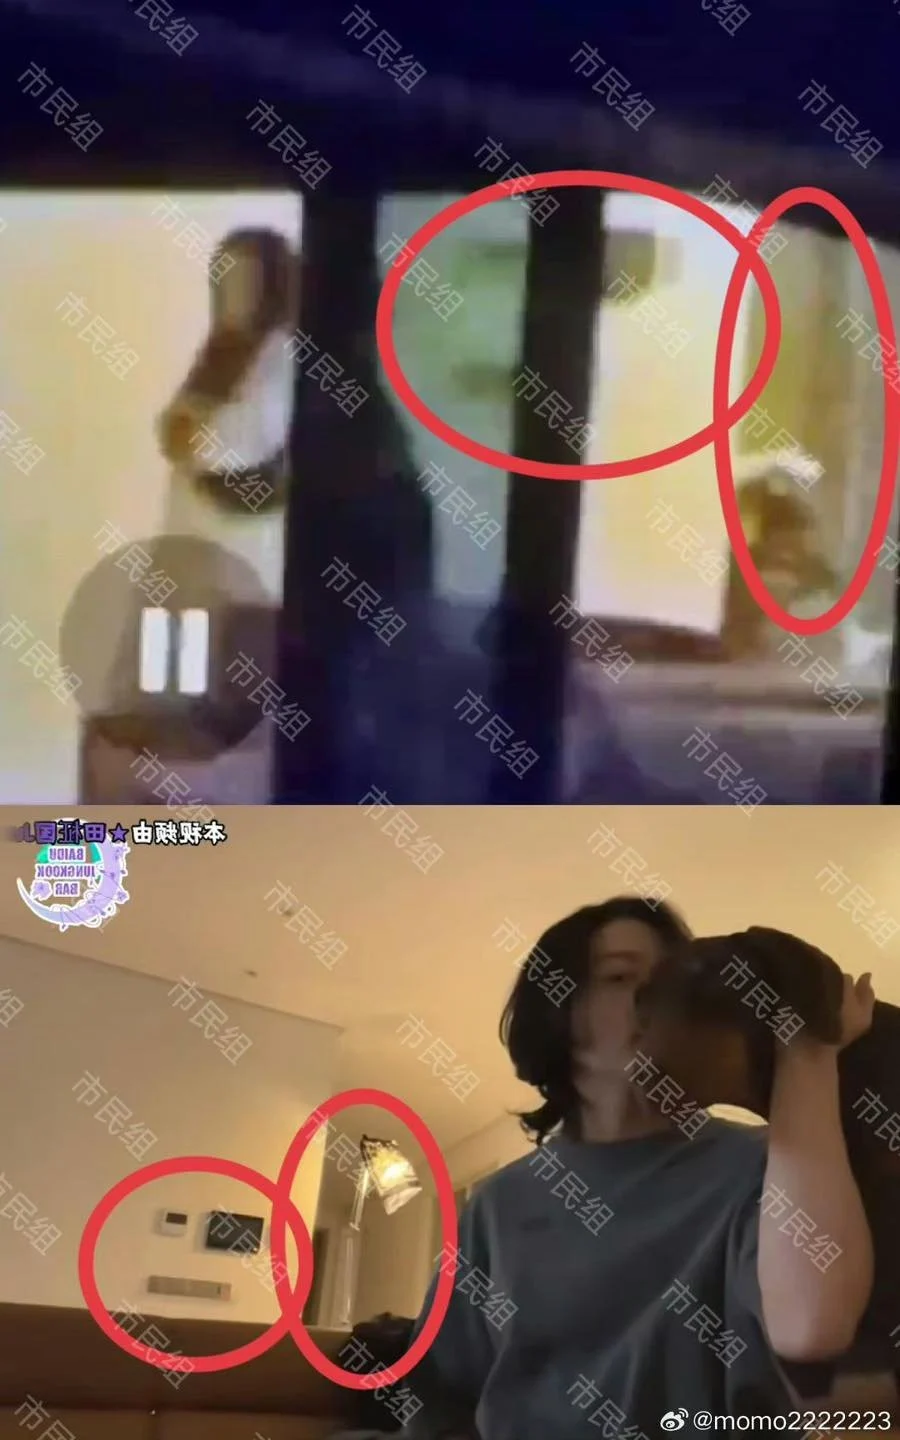 Đoạn clip được cho là Jungkook đang chơi đùa với bạn gái trong căn hộ riêng